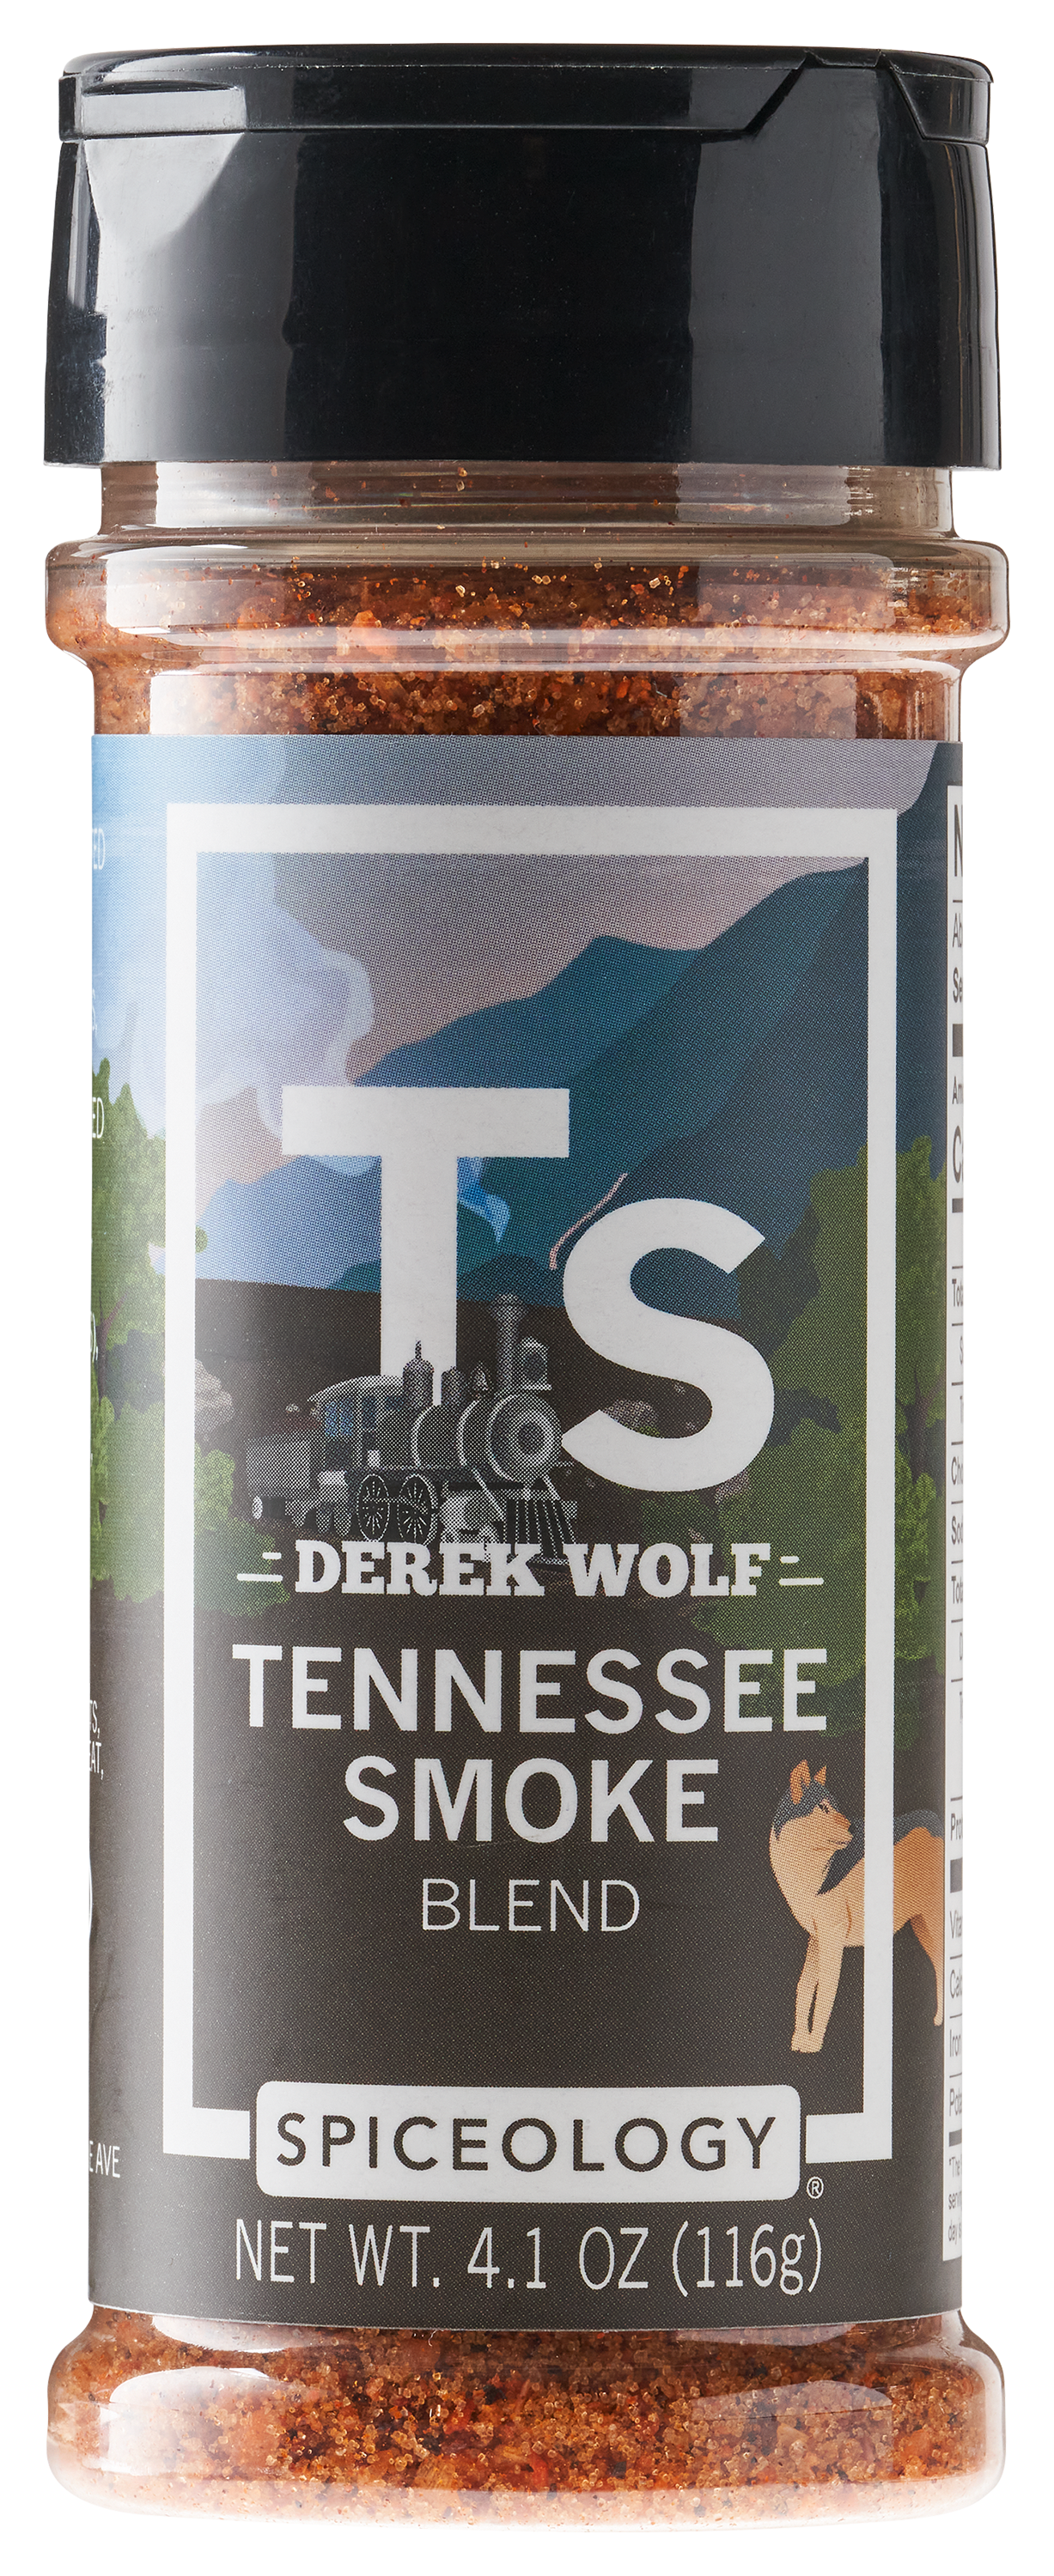 Derek Wolf, Tennessee Smoke